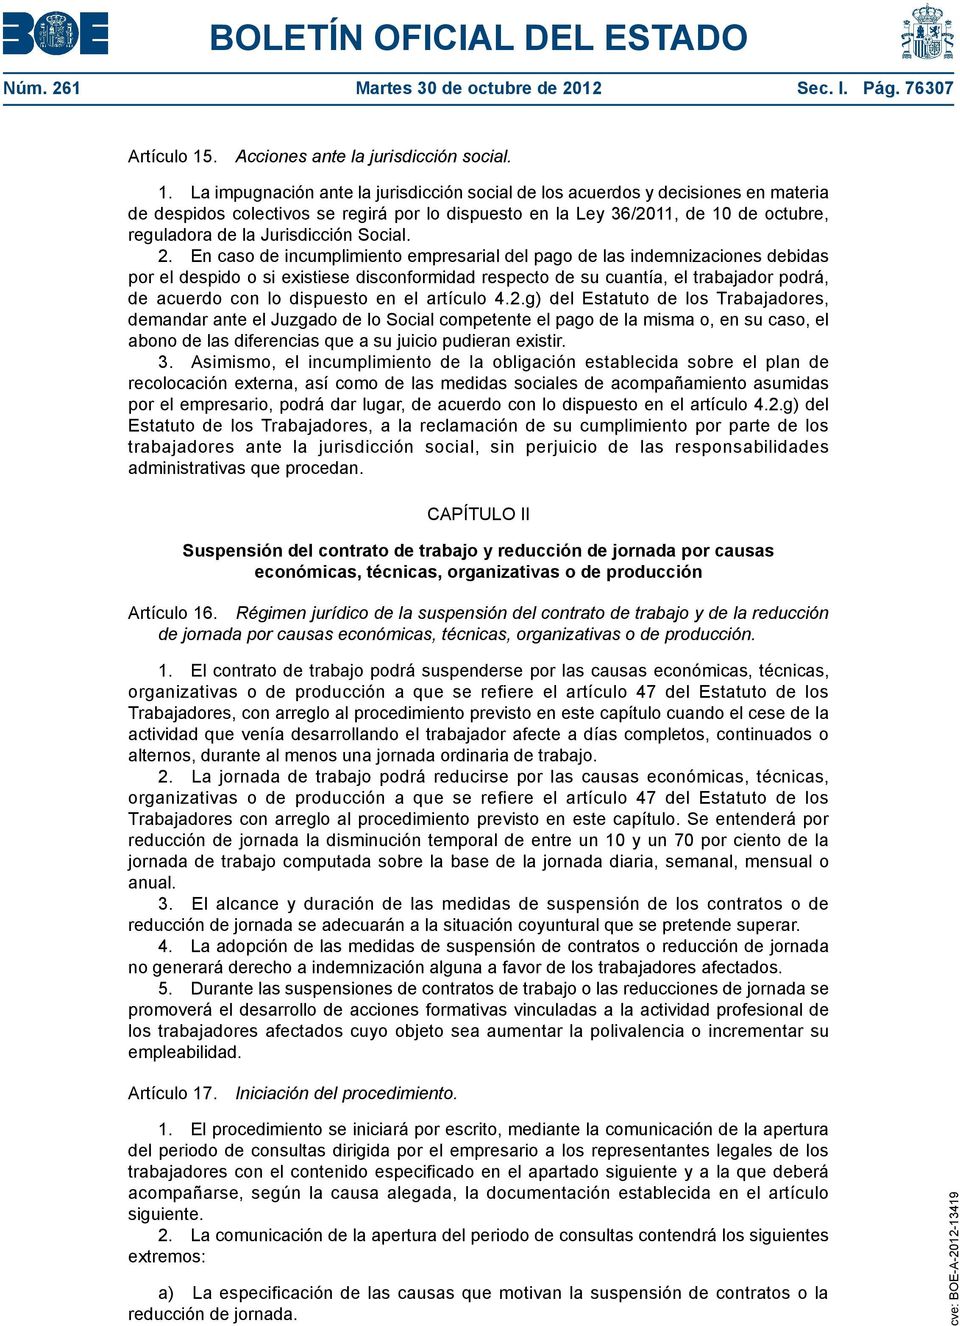 La impugnación ante la jurisdicción social de los acuerdos y decisiones en materia de despidos colectivos se regirá por lo dispuesto en la Ley 36/2011, de 10 de octubre, reguladora de la Jurisdicción